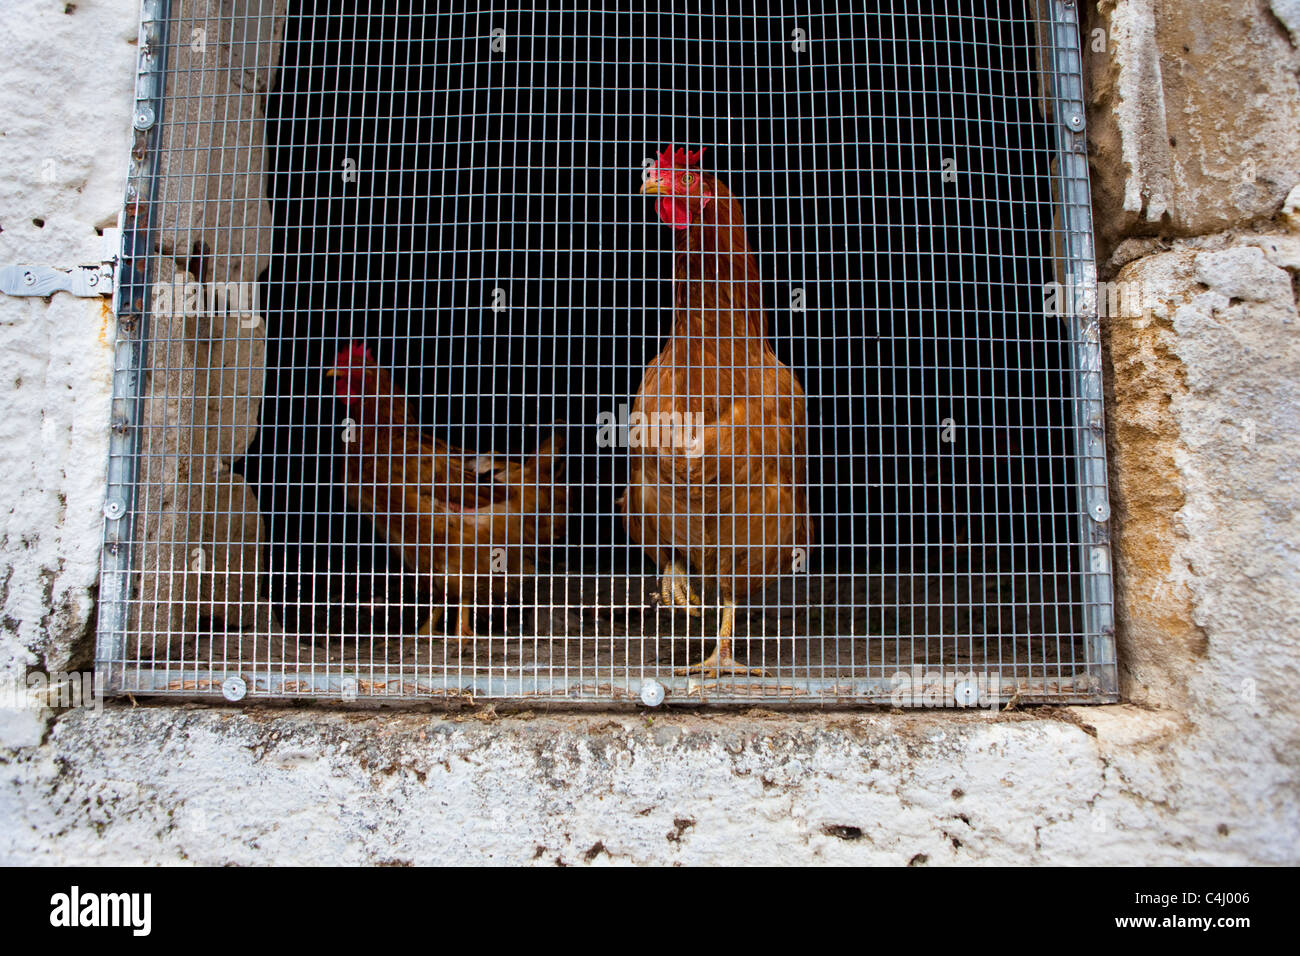 Las gallinas en un gallinero, en la antigua ciudad de Polyrinia helénica, Creta. Foto de stock